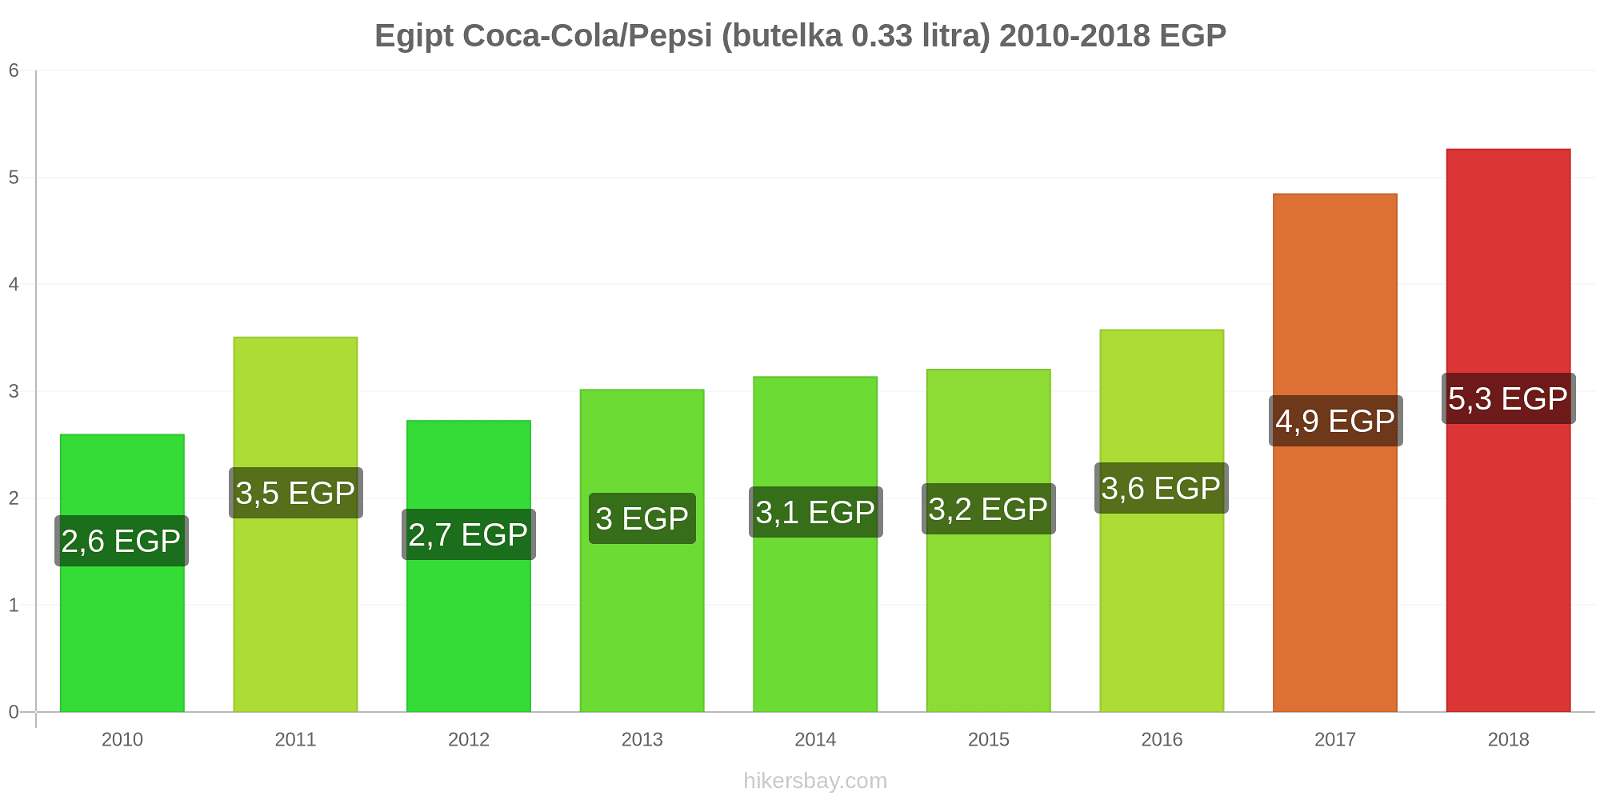 Egipt zmiany cen Coca-Cola/Pepsi (butelka 0.33 litra) hikersbay.com